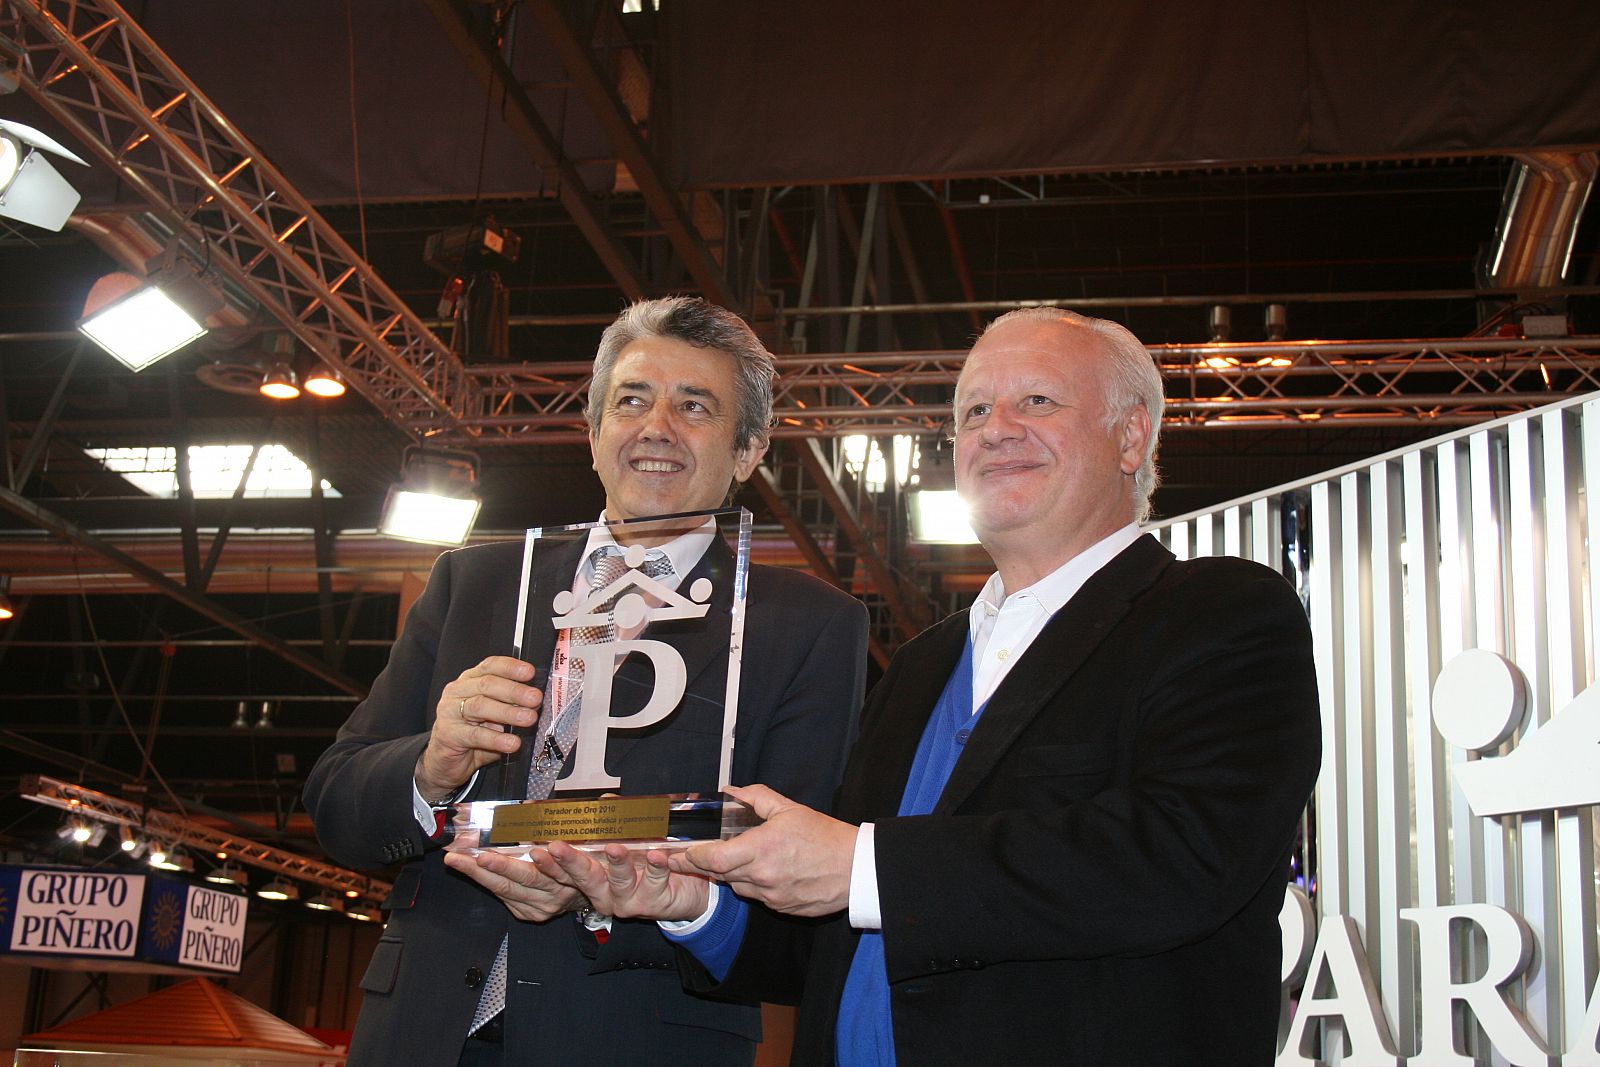 Juan Echanove recoge el Premio Paradores 2010